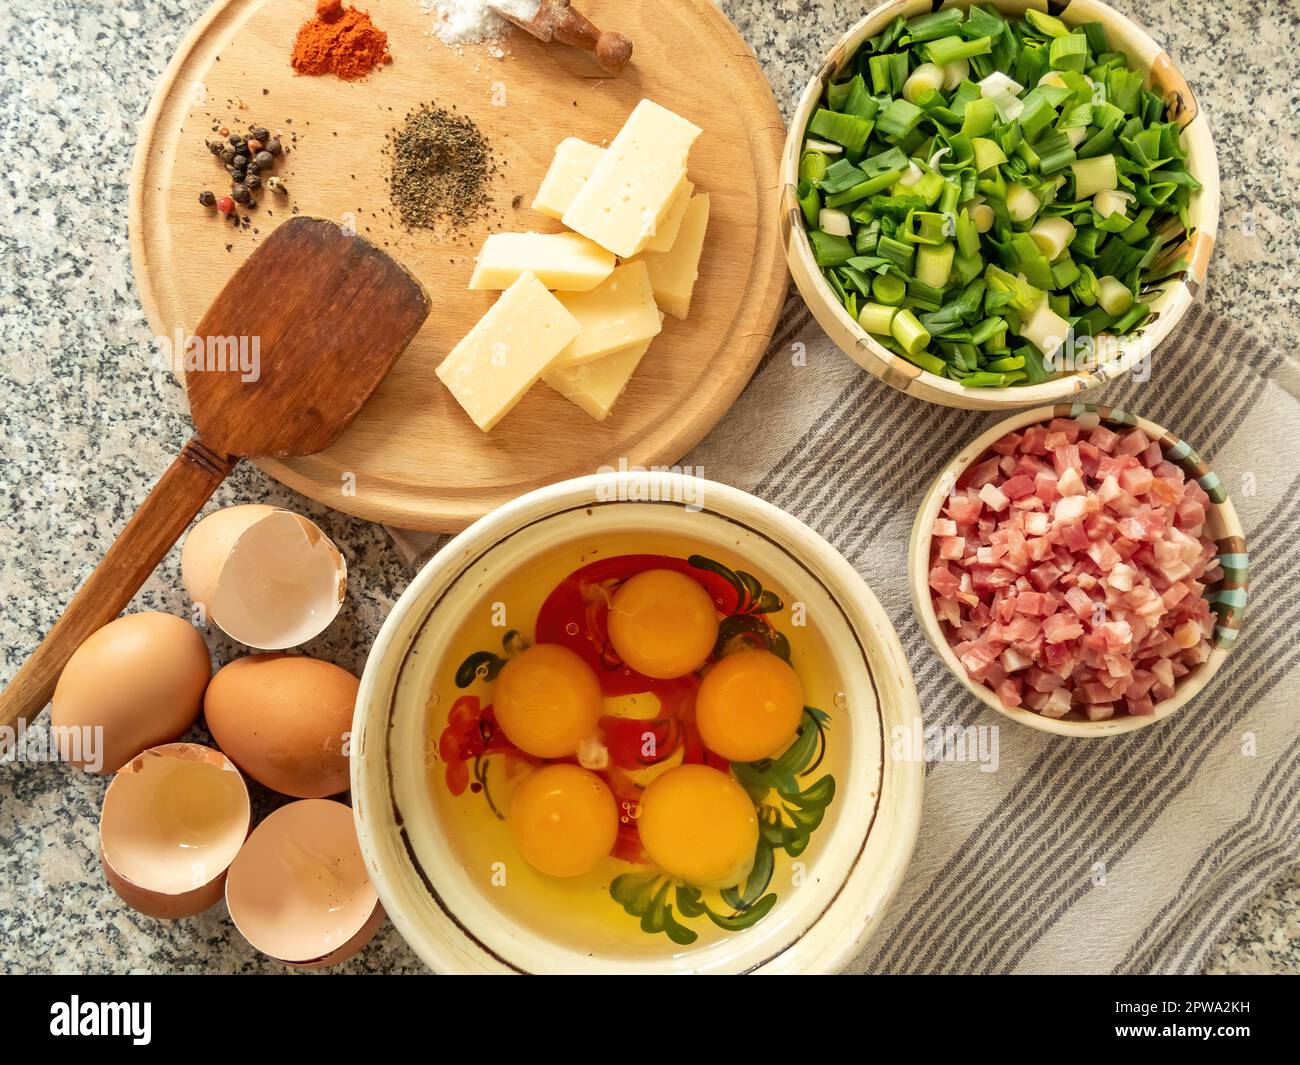 ingrédients pour préparer une omelette avec du bacon et des légumes frais, vue de dessus Banque D'Images